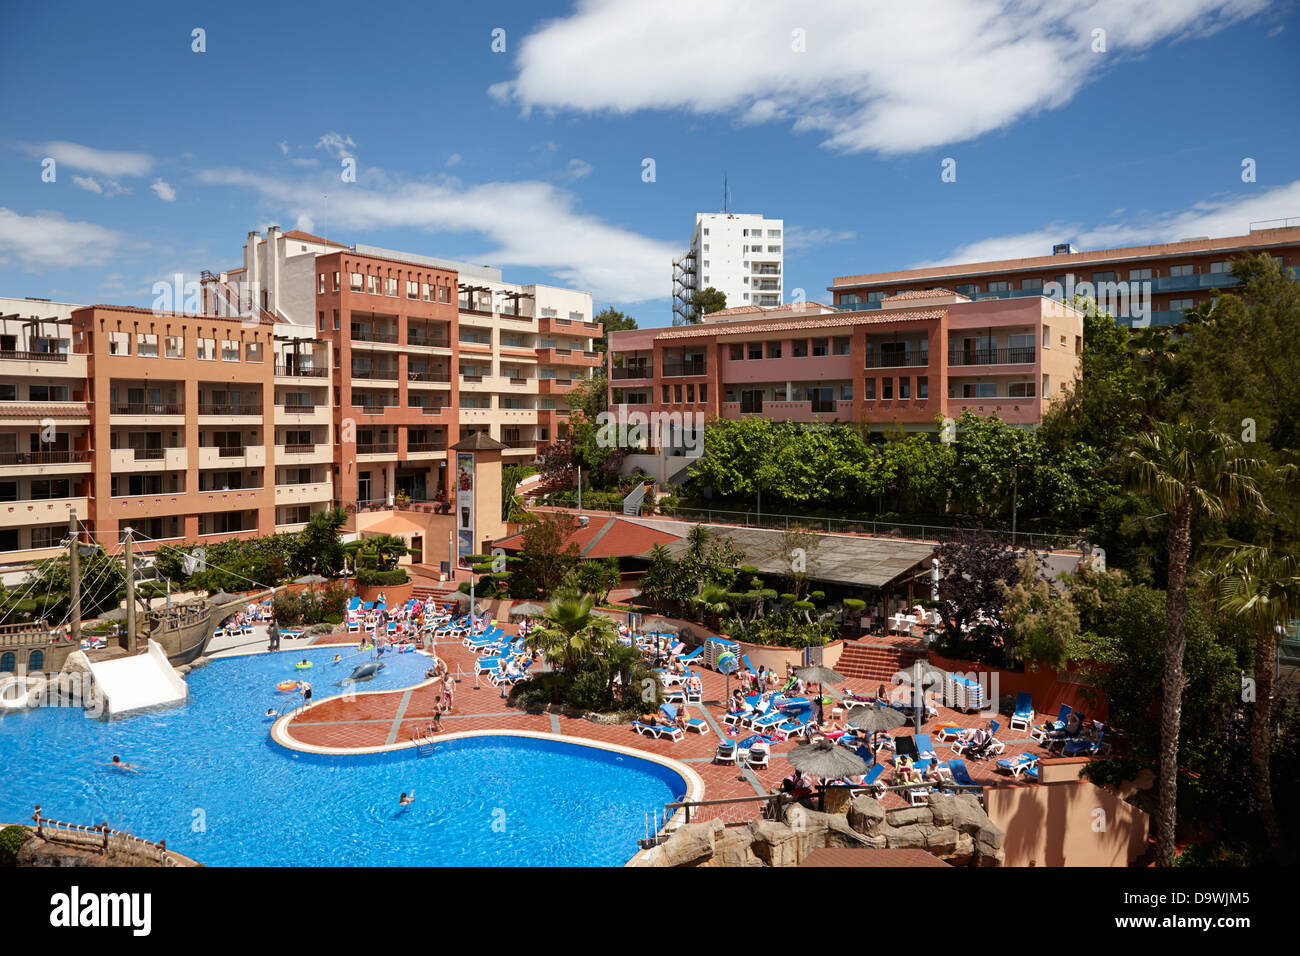 Complejo hotelero español moderno complejo con piscina en el cap de Salou, Cataluña, España Foto de stock